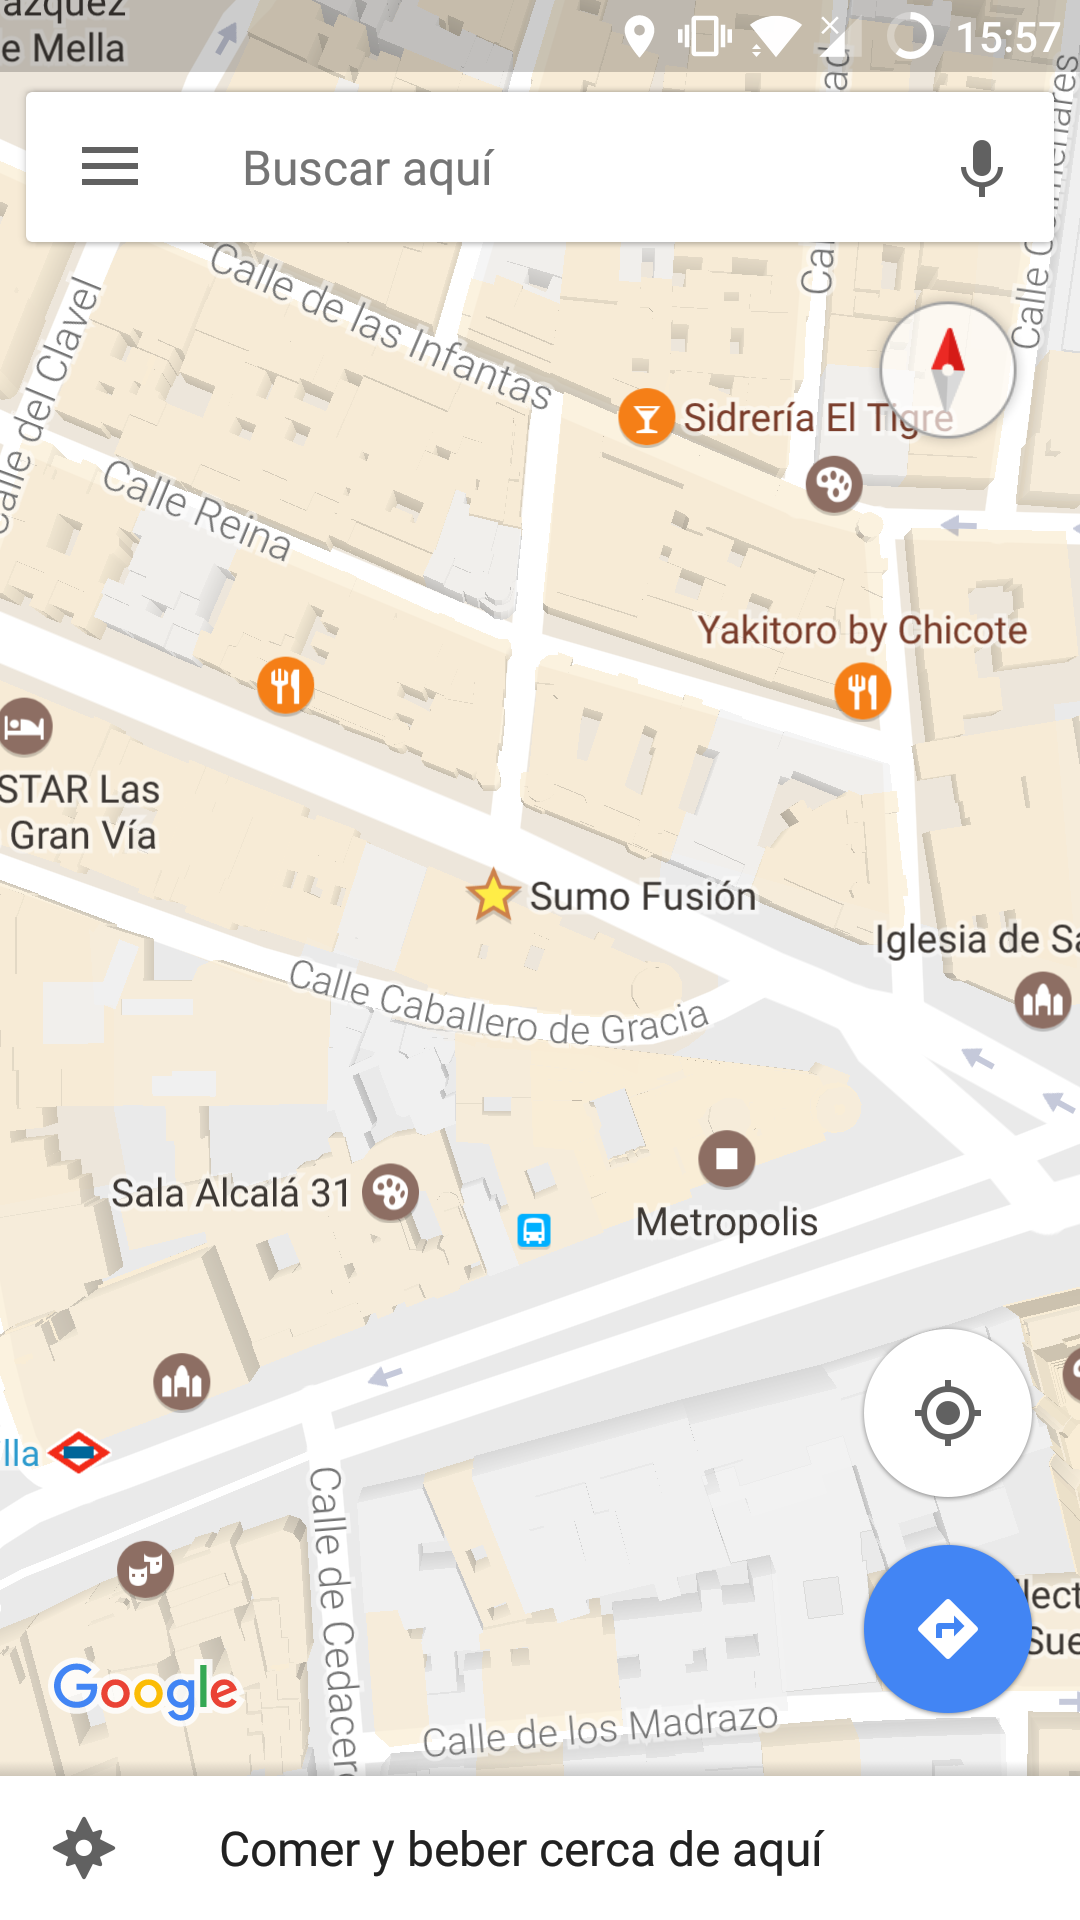 Lugar añadido como favorito en la aplicación de Google Maps